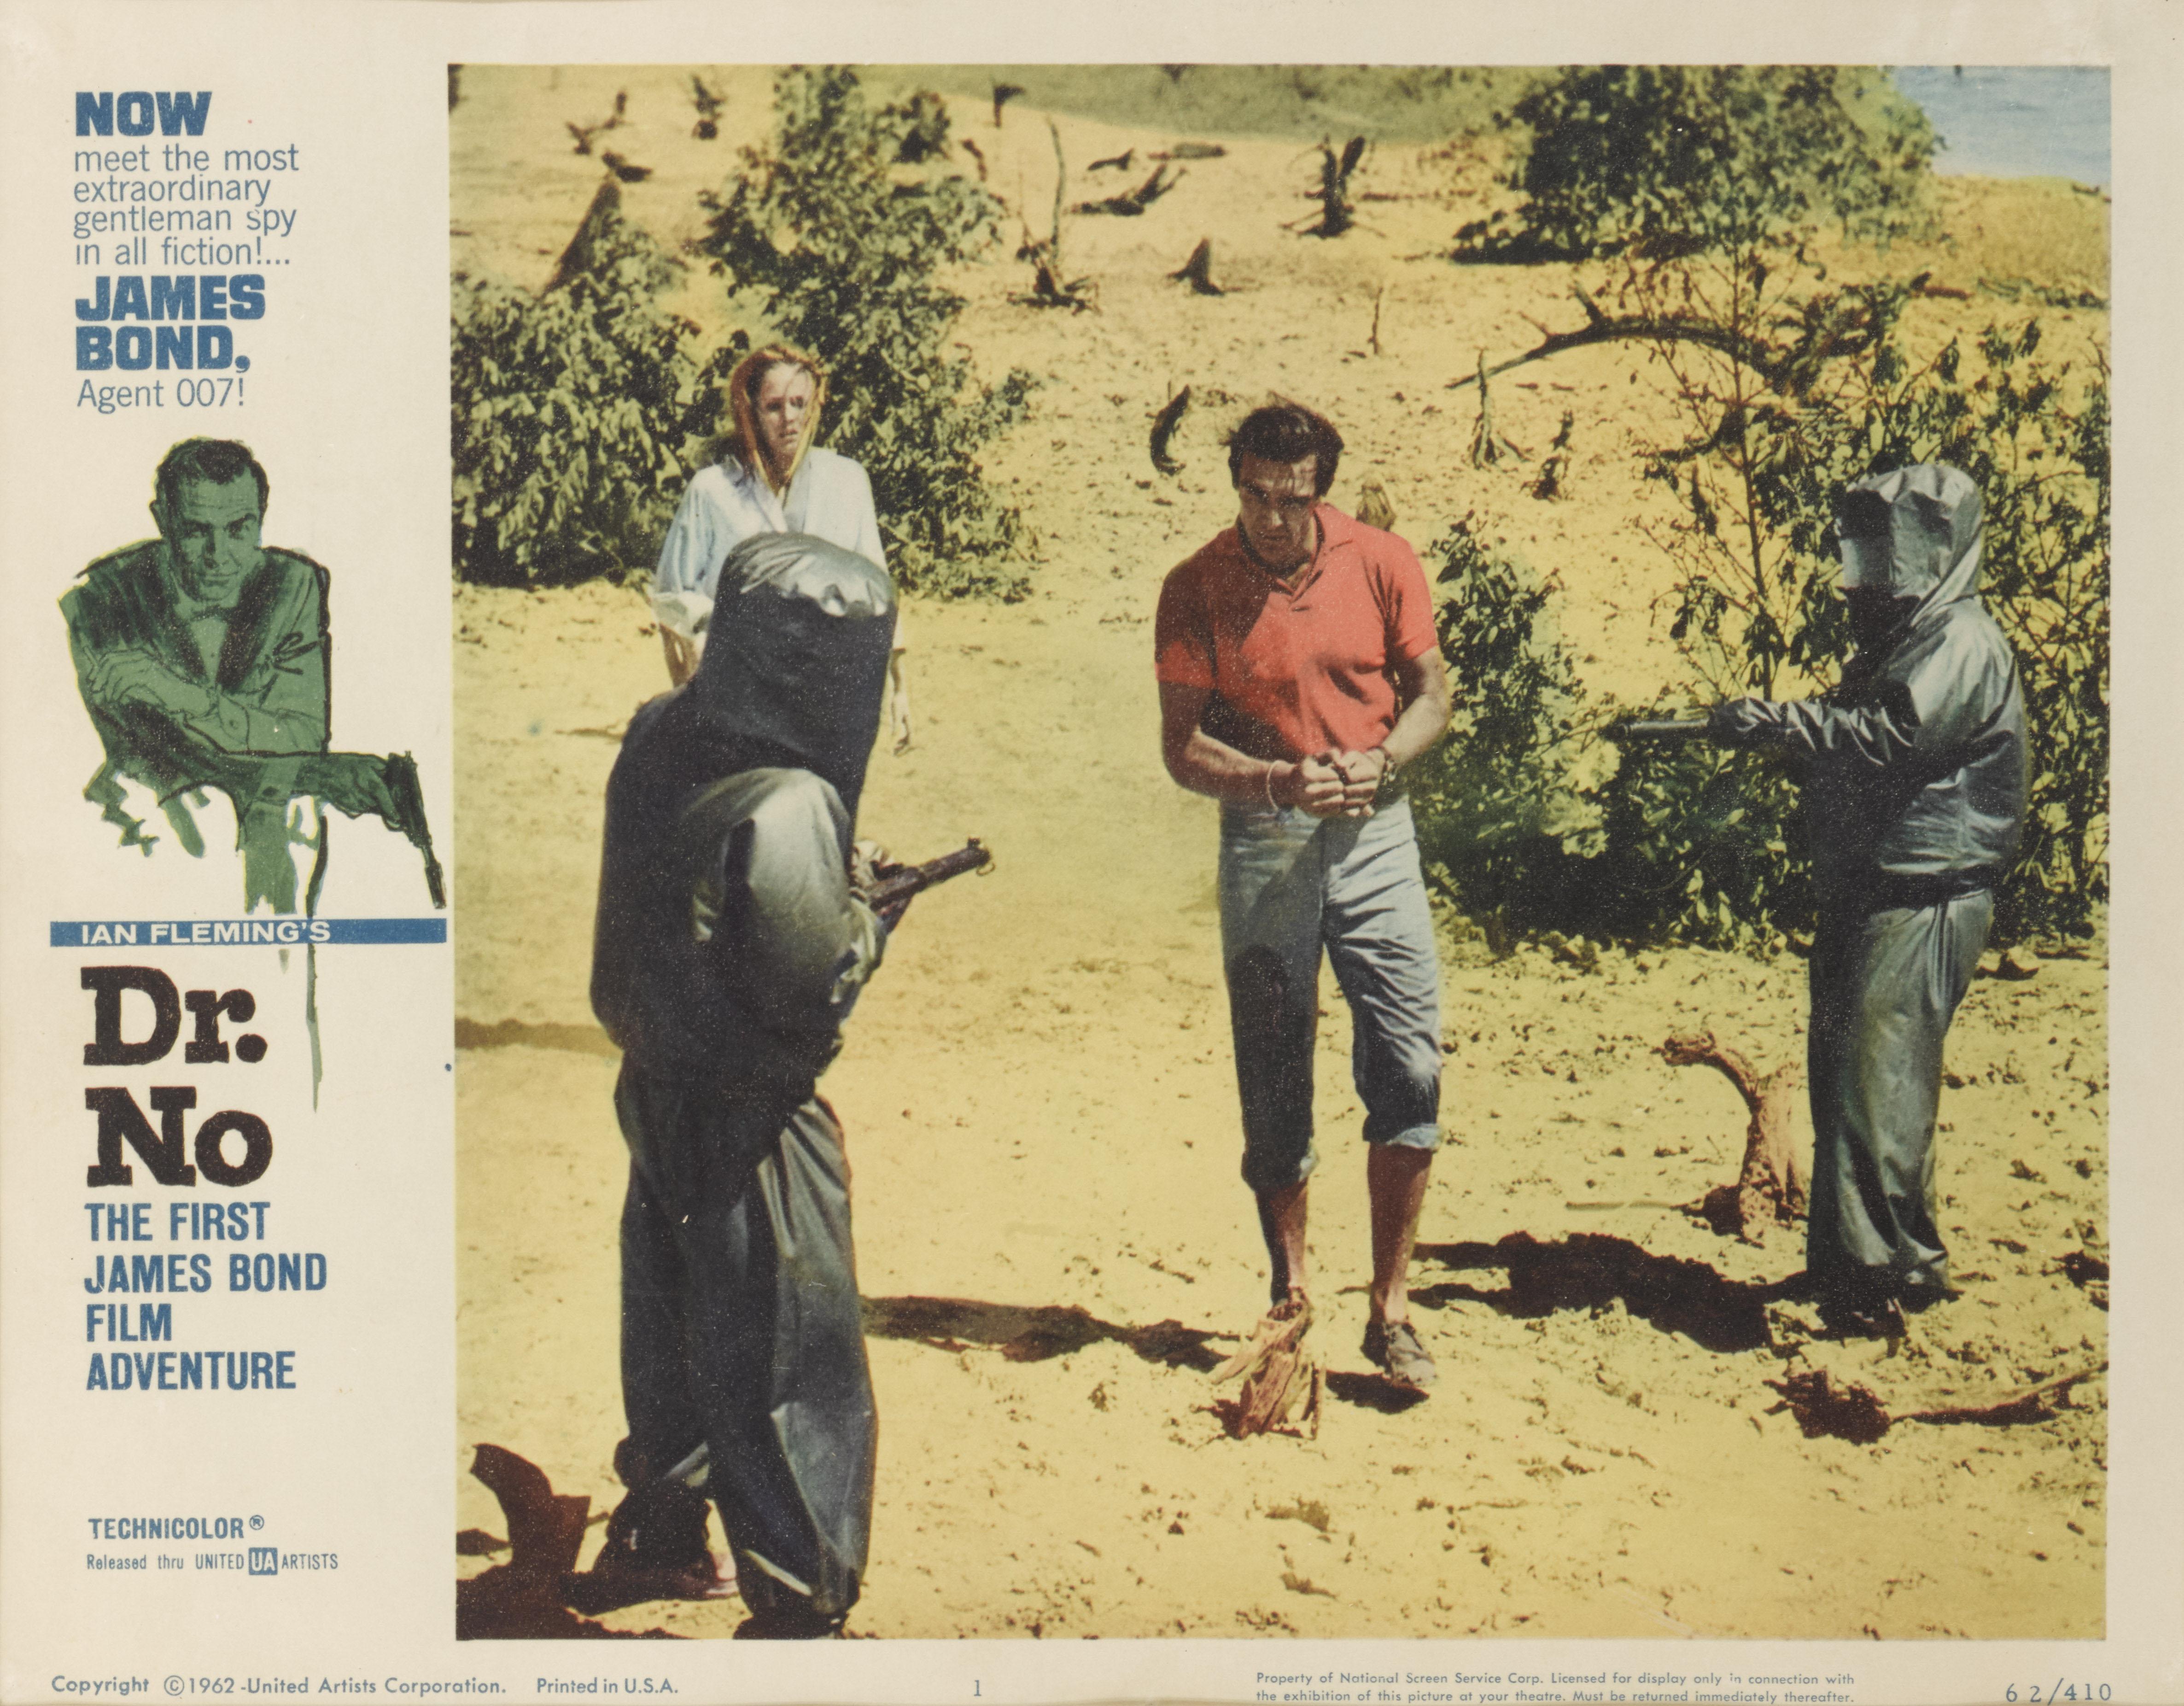 Original US-Lobbykarte für den ersten James-Bond-Film Dr. No (1962) mit Sean Connery und Ursula Andress in den Hauptrollen. Der Film wurde unter der Regie von Terence Young gedreht.
 Die Lobby-Karte ist Erhaltung mit UV-Plexiglas in einem Tulip